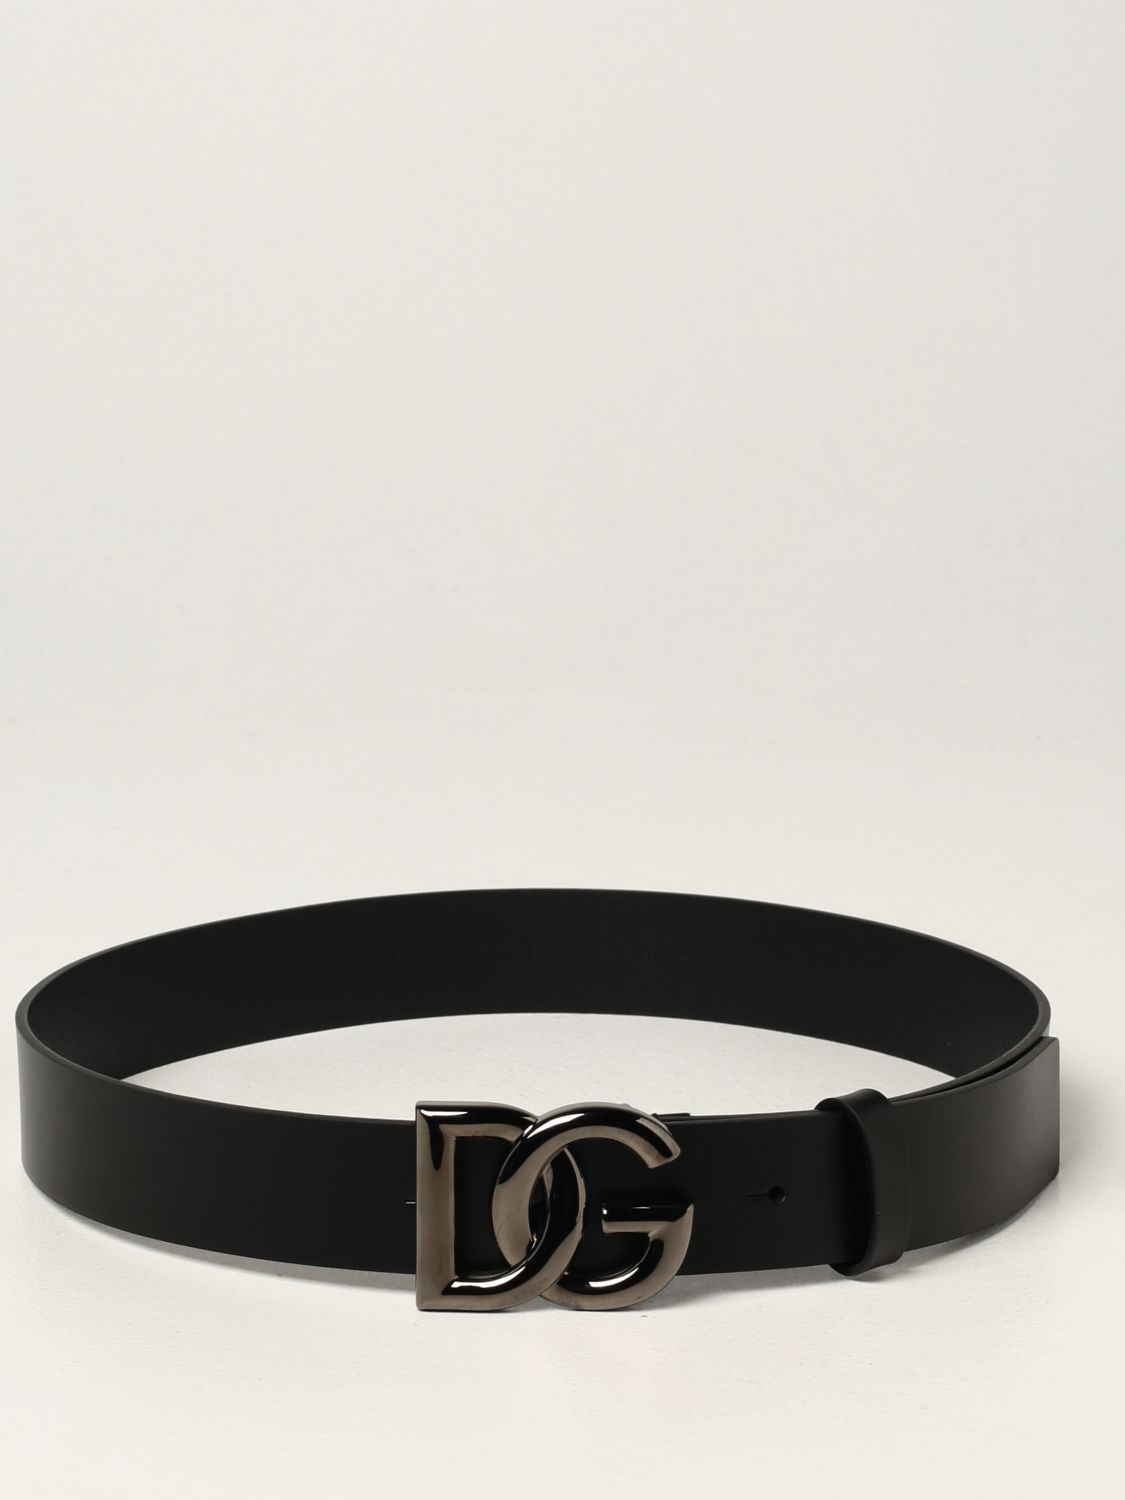 DOLCE & GABBANA: leather belt with DG logo buckle - Black | Belt Dolce ...